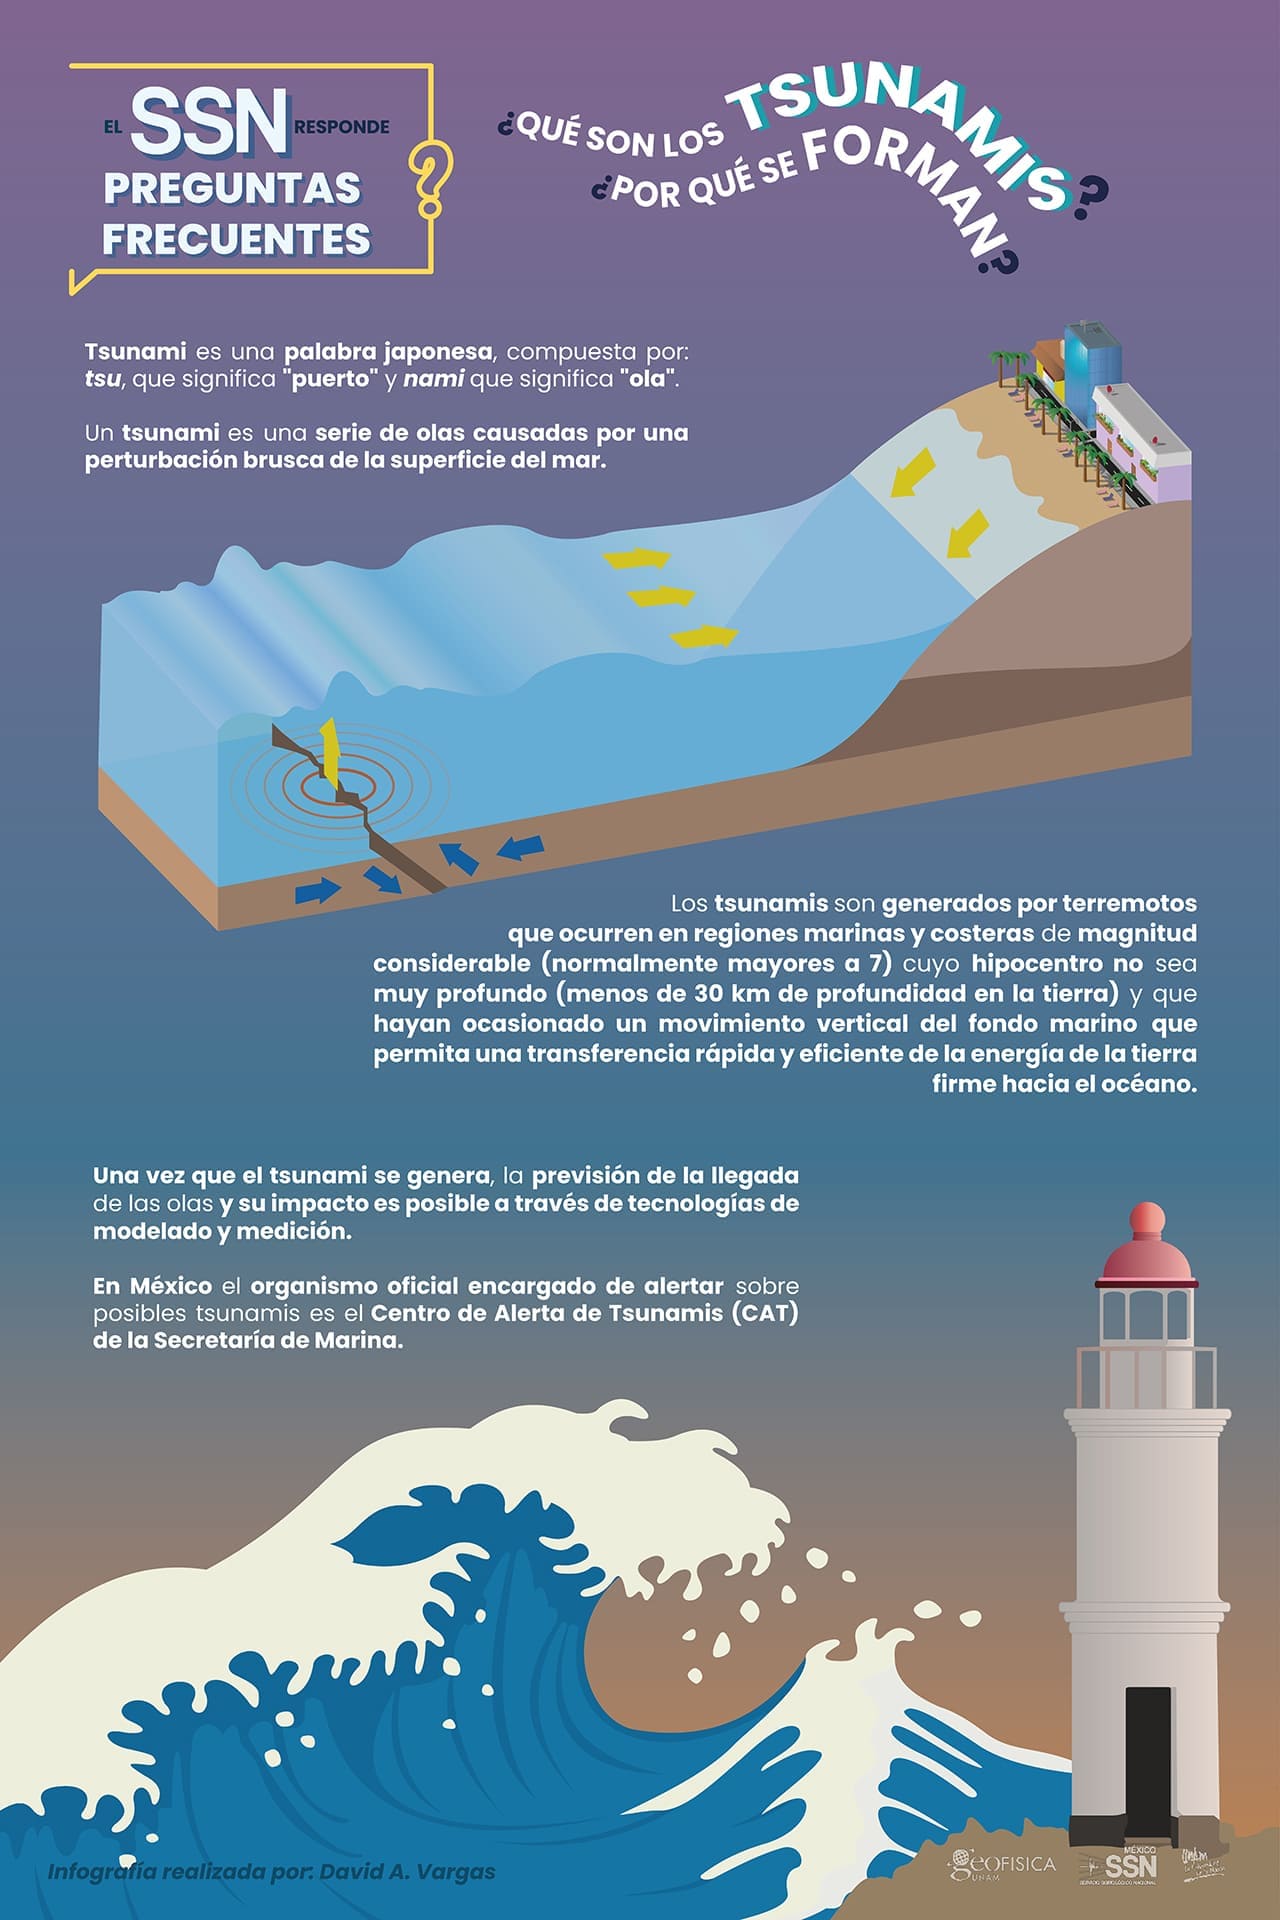 ¿Qué son los tsunamis?, ¿Por qué se forman?